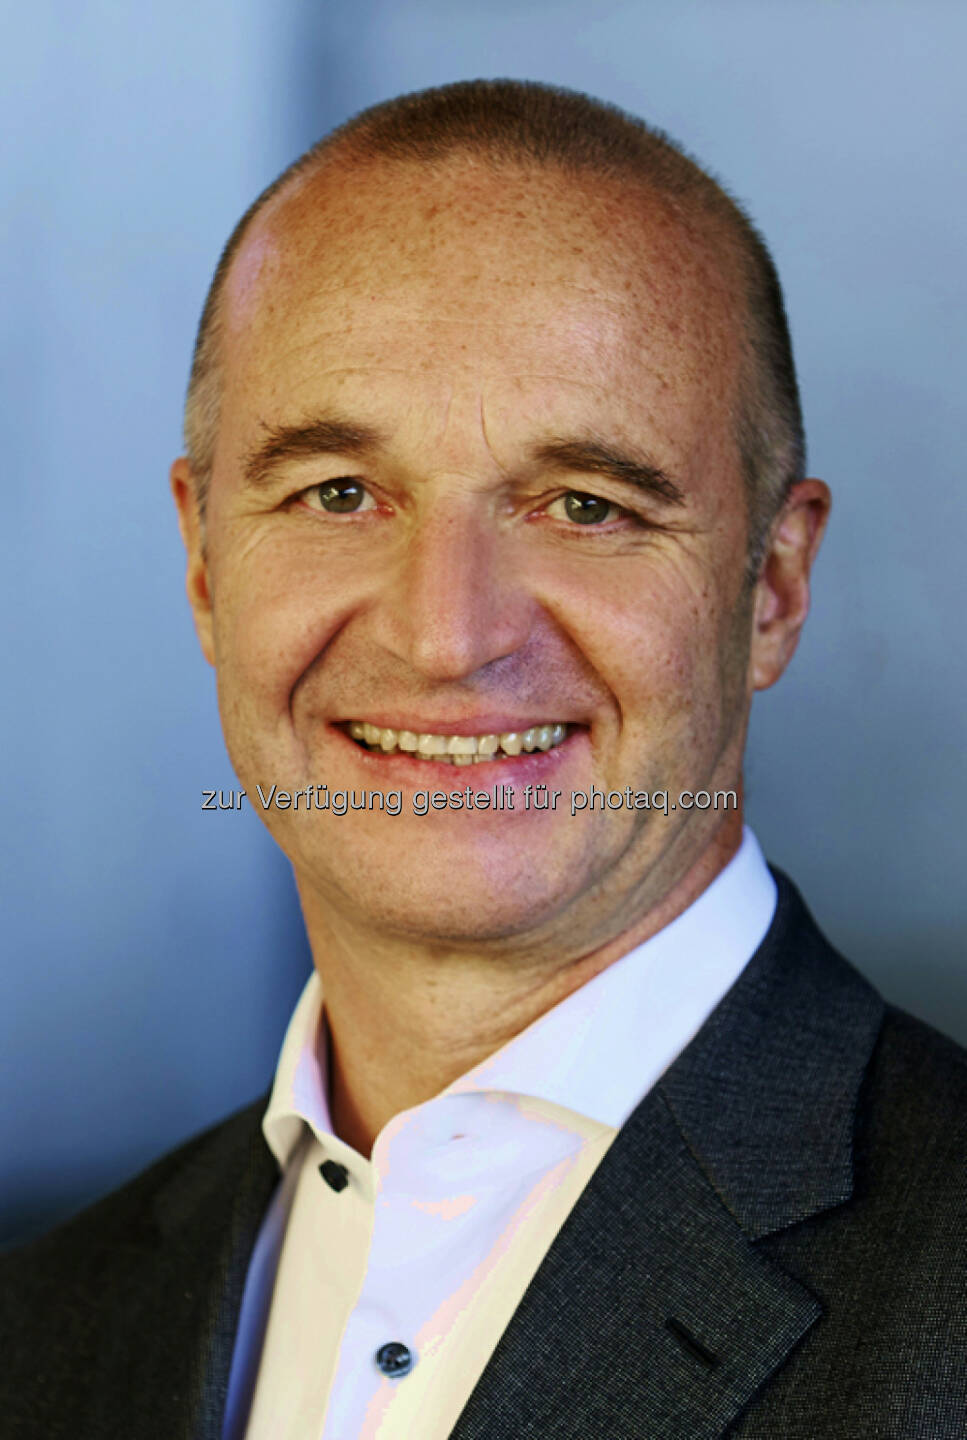 Christoph Nussbaumer (Strategy Consultants GmbH) : Power Pricing in der Hotellerie: Branchenseminar über die optimale Preis-Strategie für Hotelbetriebe : Fotocredit: Marcel Hagen